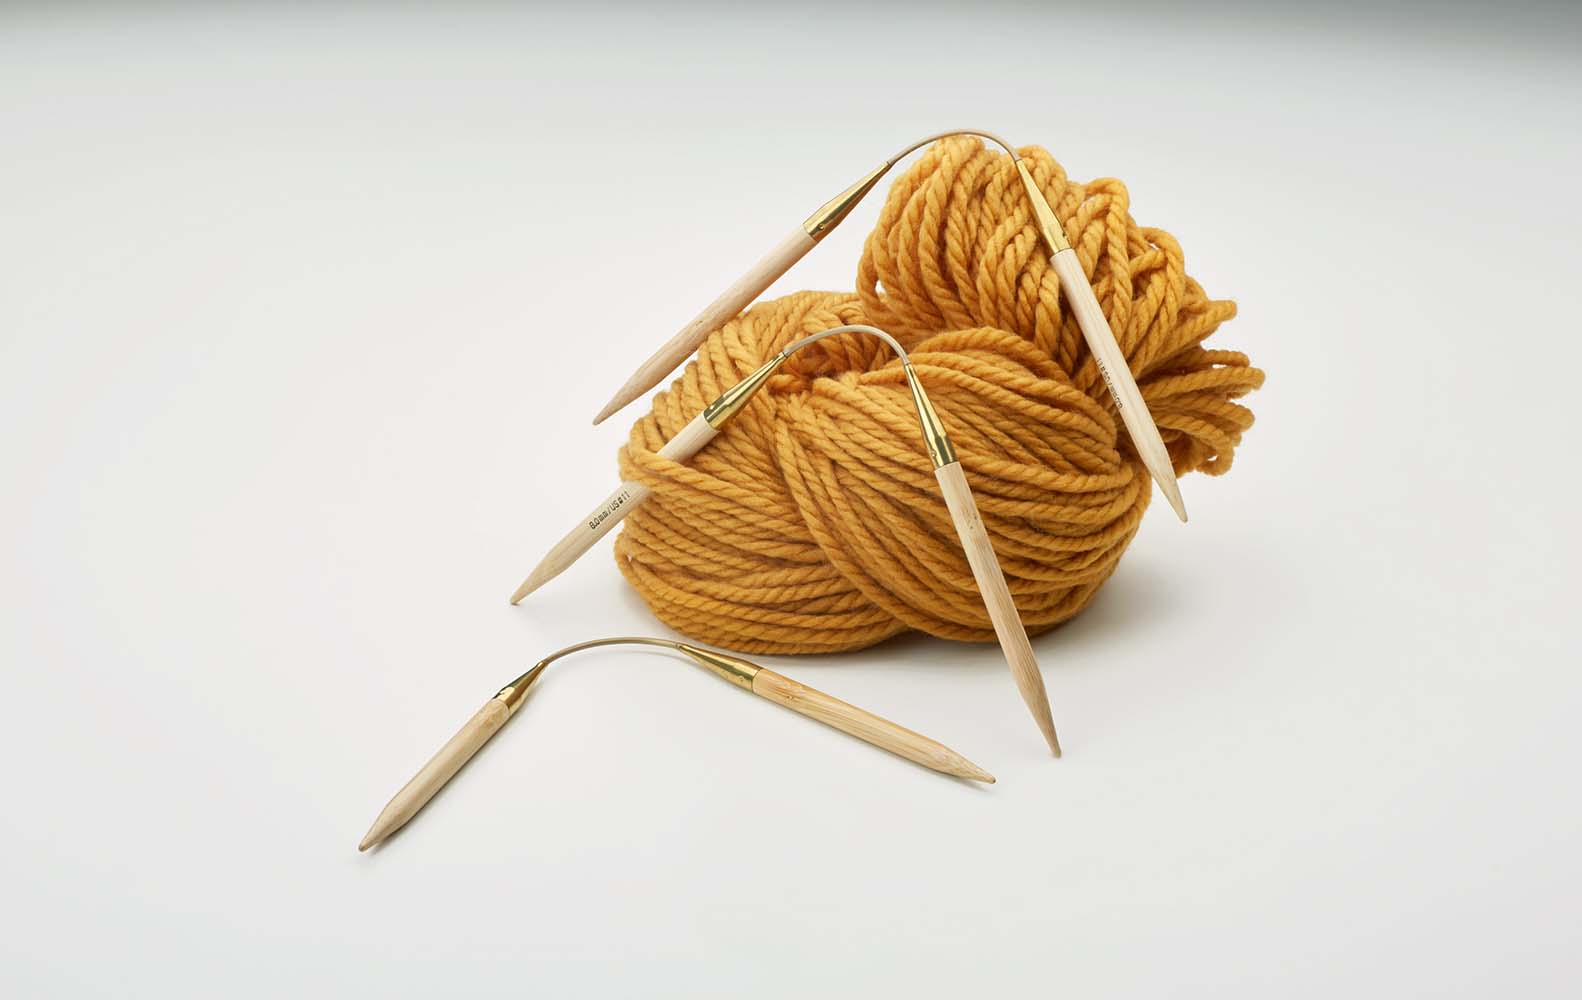 561 2 addiCraSyTrio Bamboo LONG bendable needle play needles 3 needles bamboo 4 8mm 30cm MadeinGermany mood rgb innovations,stocking knitting needles,circular knitting needles,CraSyTrio